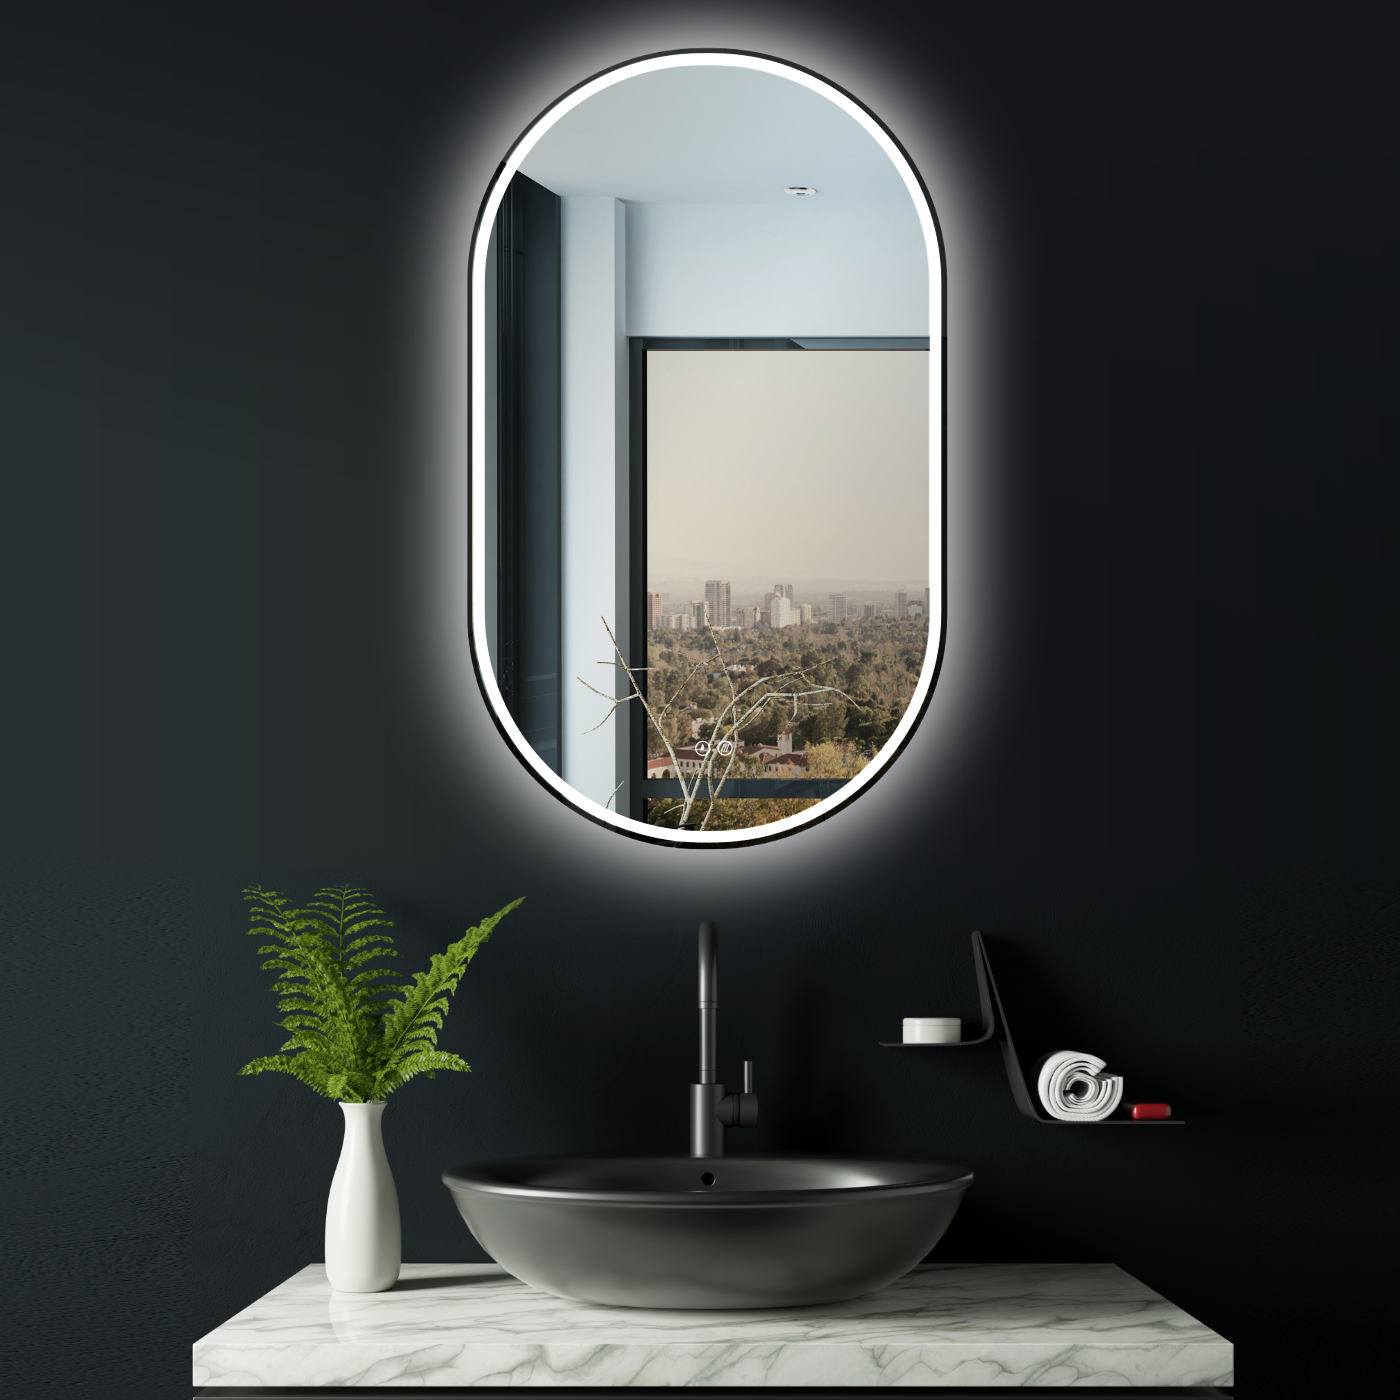 LED Badspiegel, design oval Dekor Spiegel mit led Beleuchtung, Antibeschlag Funktion, Schwarz Metallrahmen